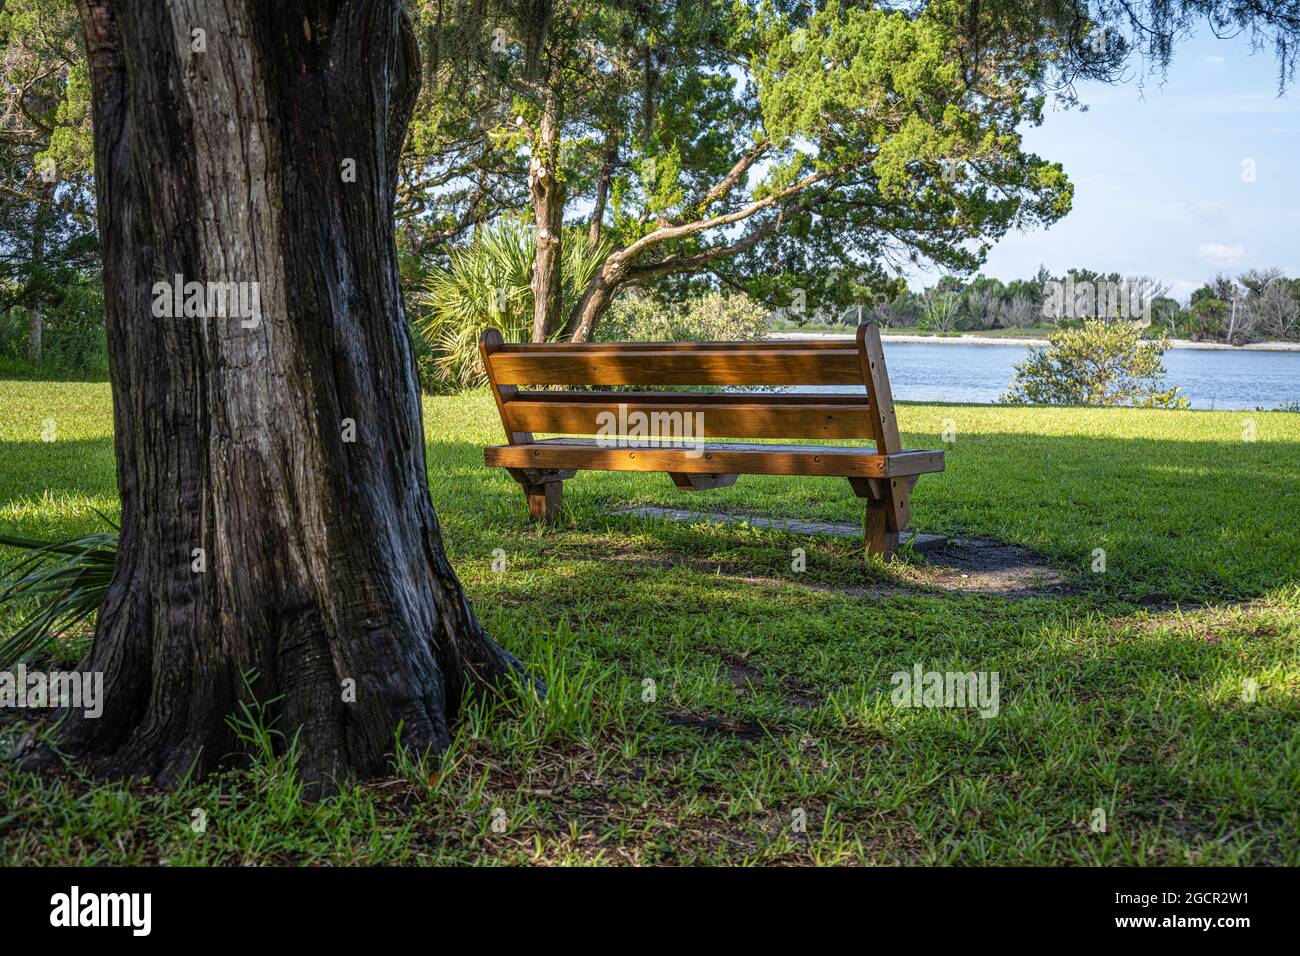 Banc de parc ombragé avec vue sur la rivière Matanzas (Intracoastal Waterway) au parc national Washington Oaks Gardens à Palm Coast, en Floride. (ÉTATS-UNIS) Banque D'Images